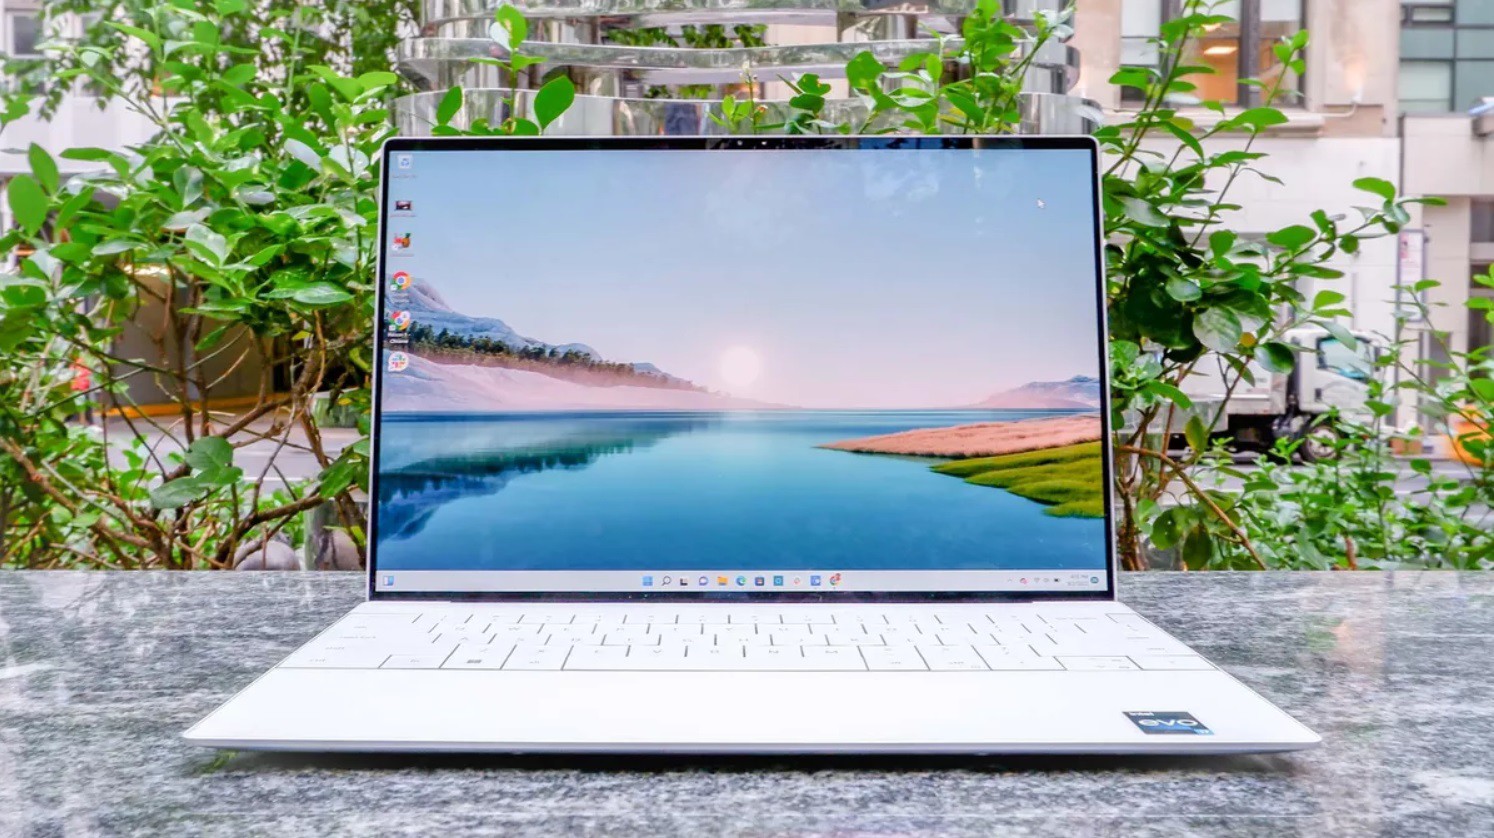 Fan công nghệ có cần mua laptop màn hình 4K để nhìn đẹp hơn? - 3